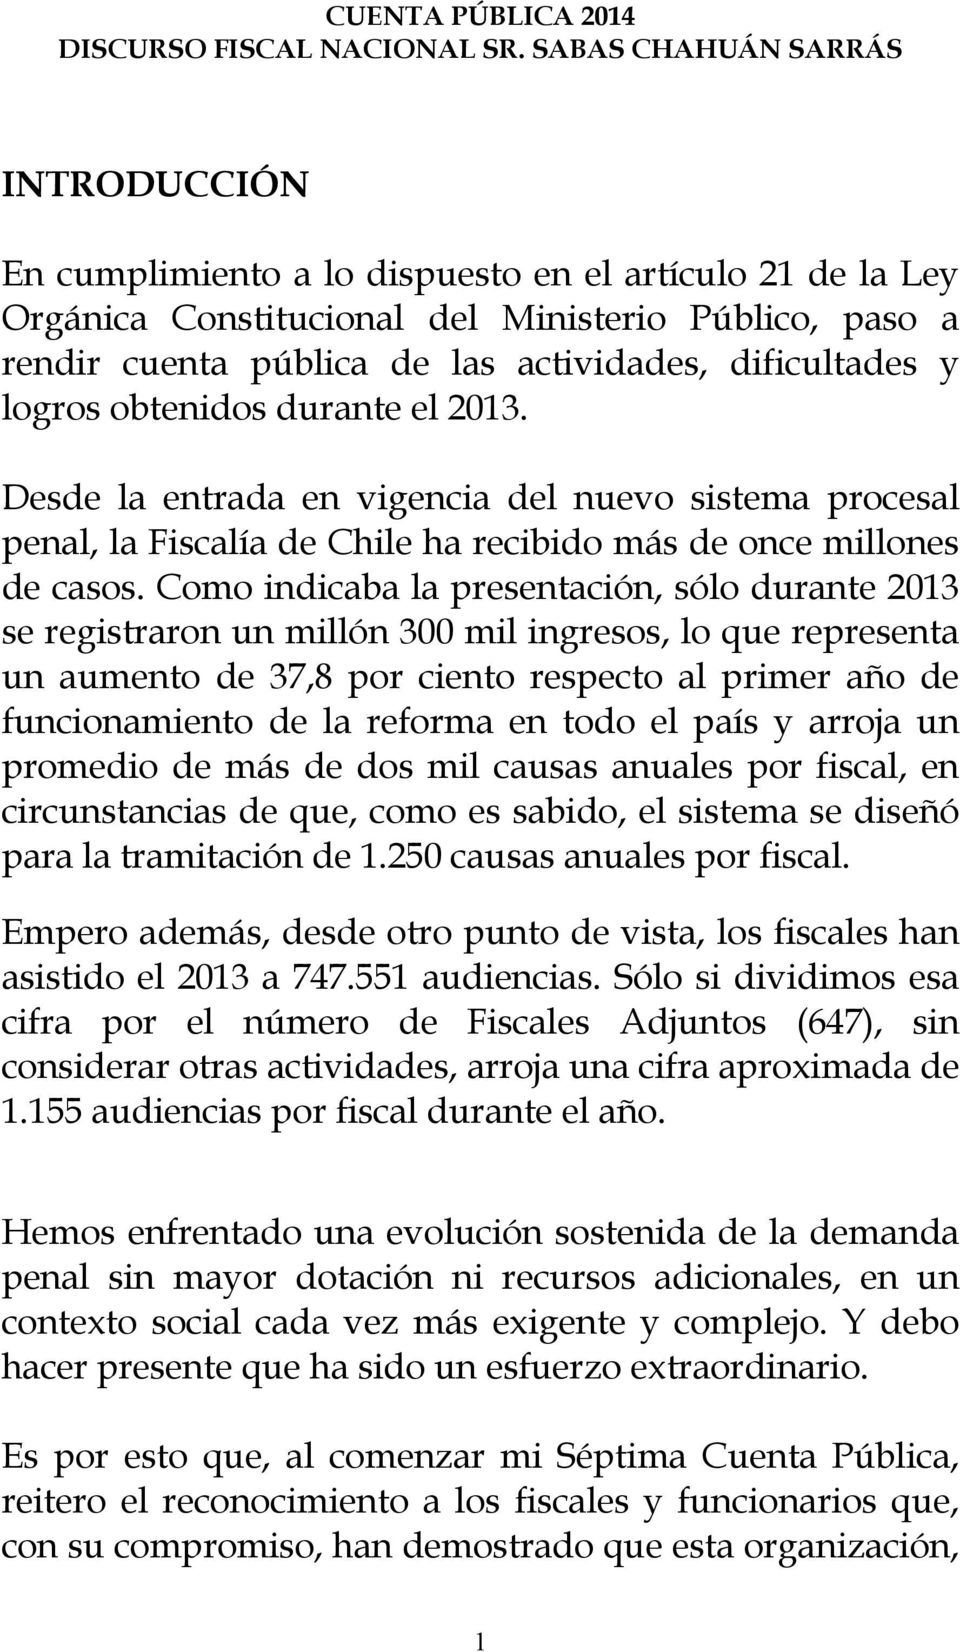 dificultades y logros obtenidos durante el 2013. Desde la entrada en vigencia del nuevo sistema procesal penal, la Fiscalía de Chile ha recibido más de once millones de casos.